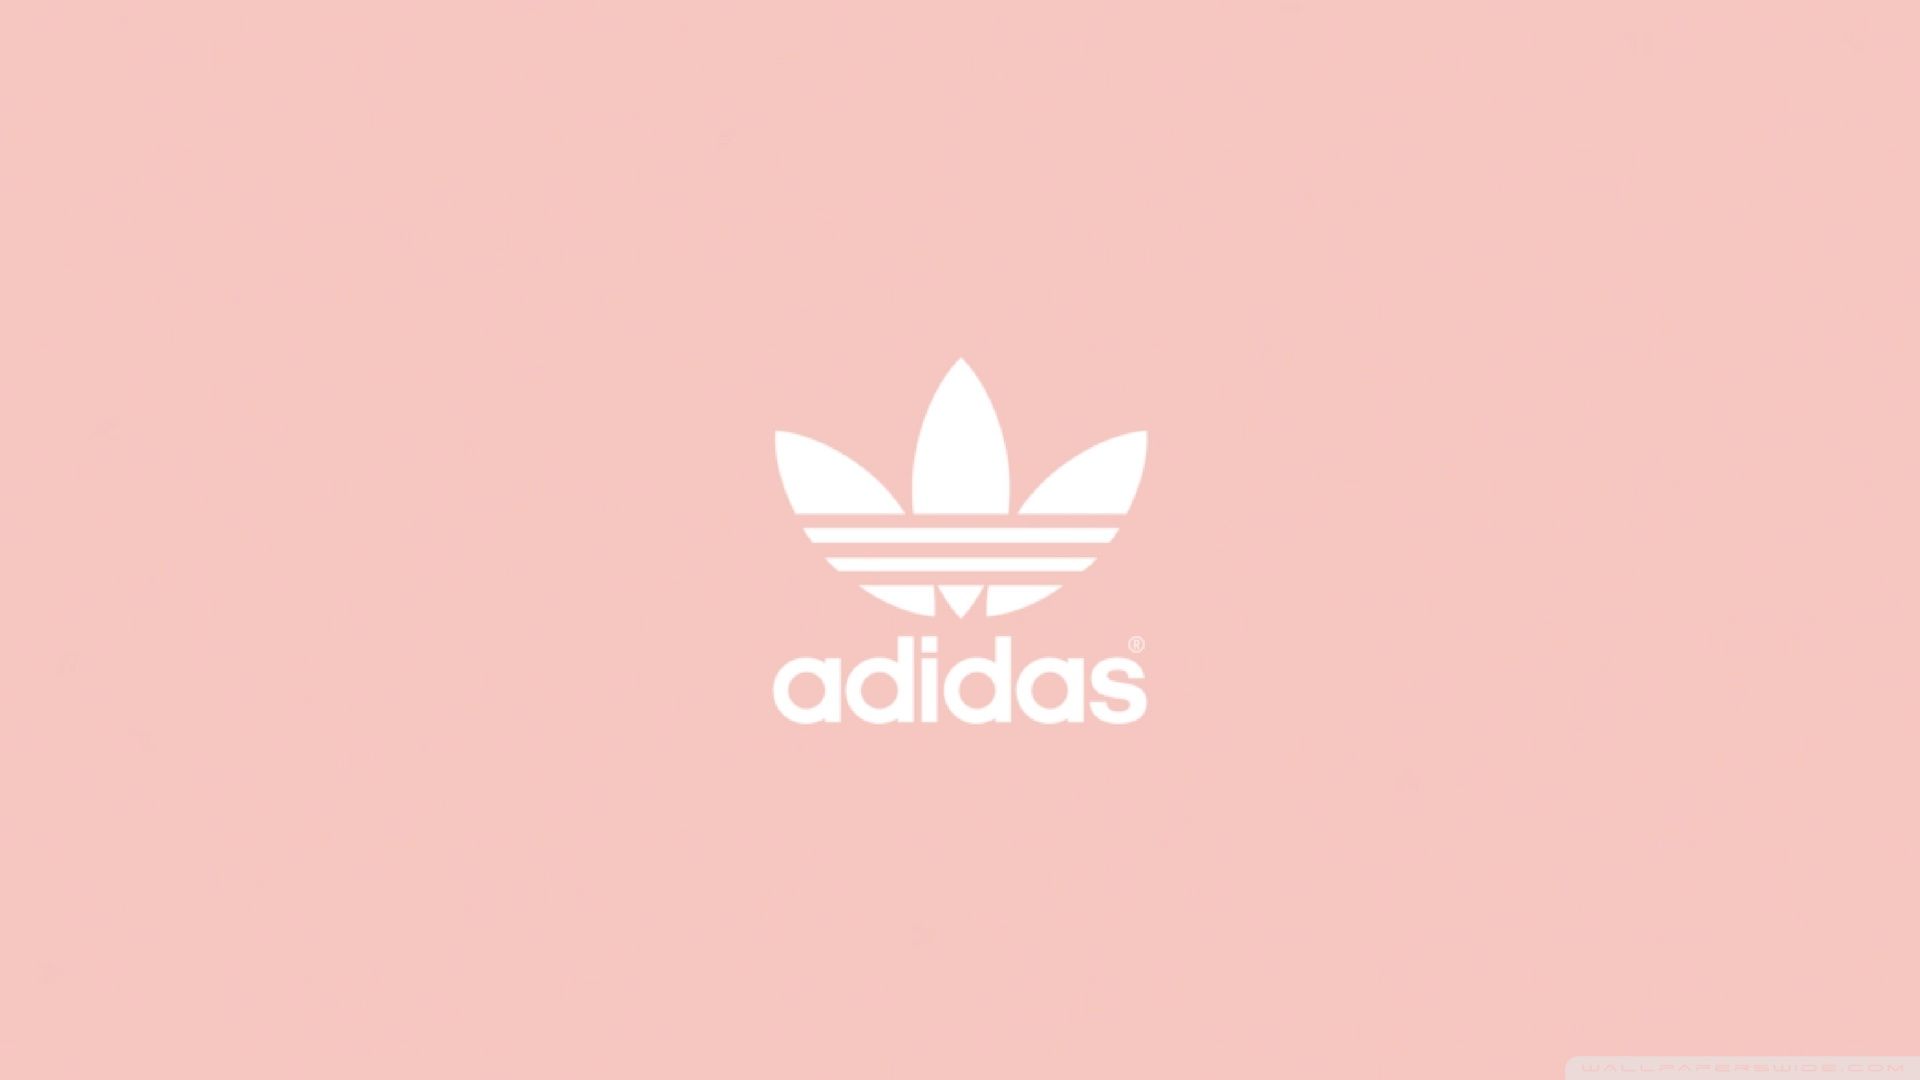 Adidas Wallpaper en newwallpaperdownload.com